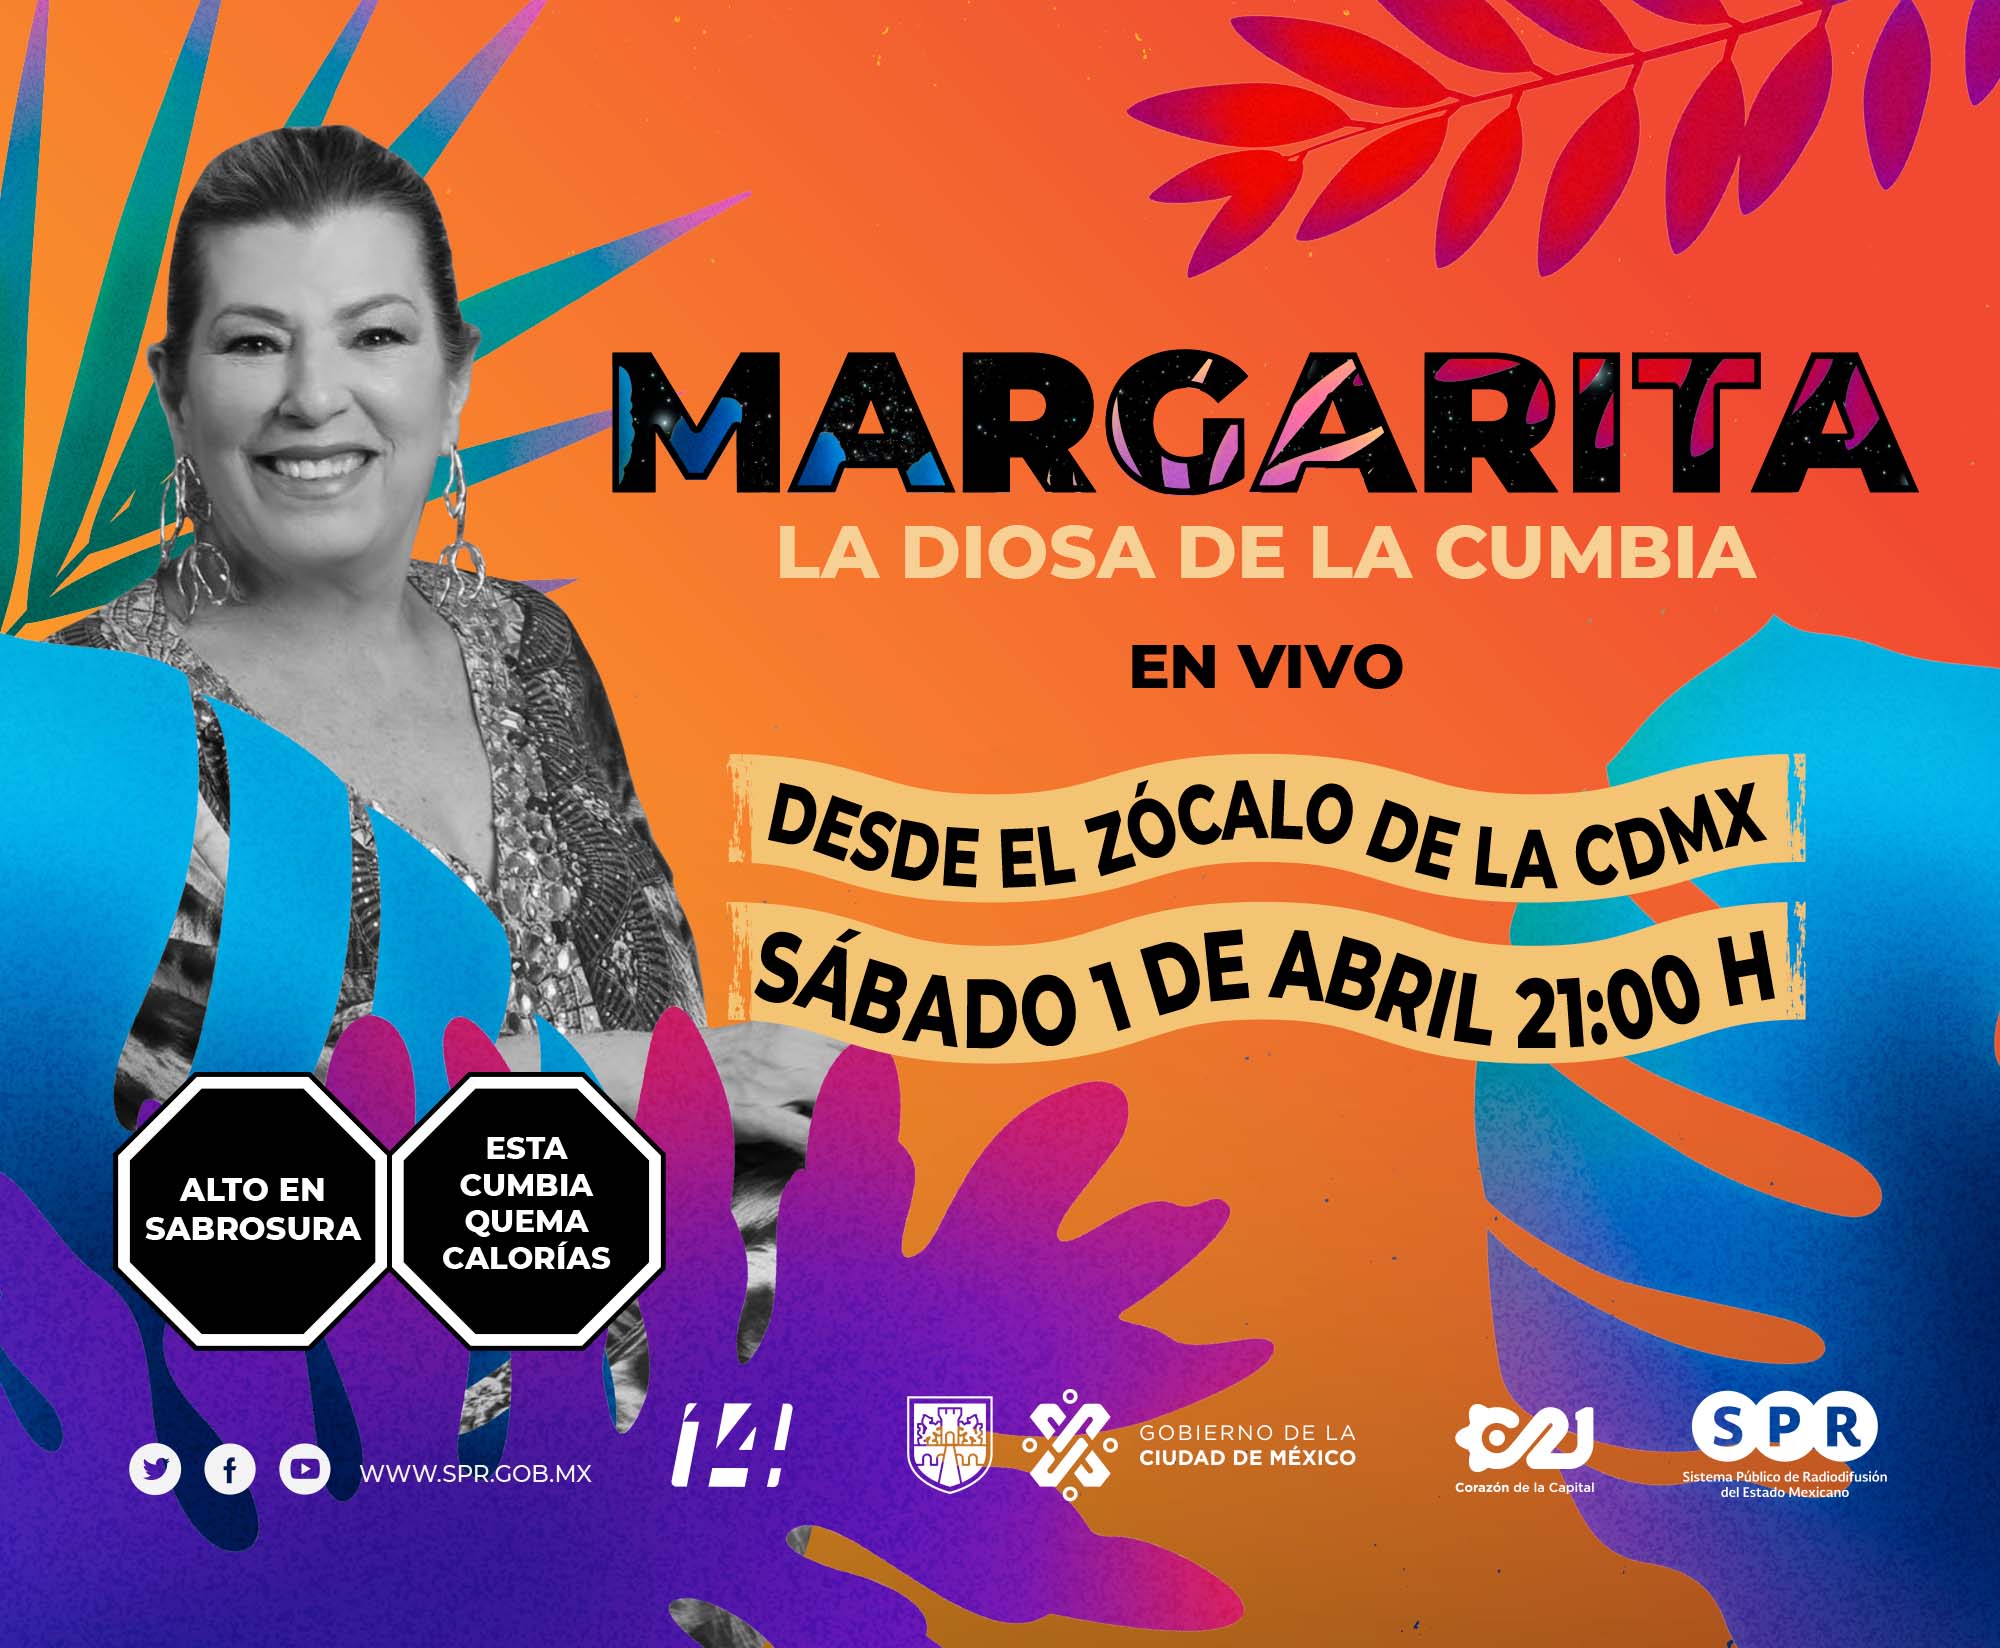 <i>Canal Catorce</i> del SPR, en colaboración con <i>Capital 21</i>, transmitirá en vivo el concierto de Margarita <b>“La Diosa de la Cumbia”</b>, el sábado 1 de abril